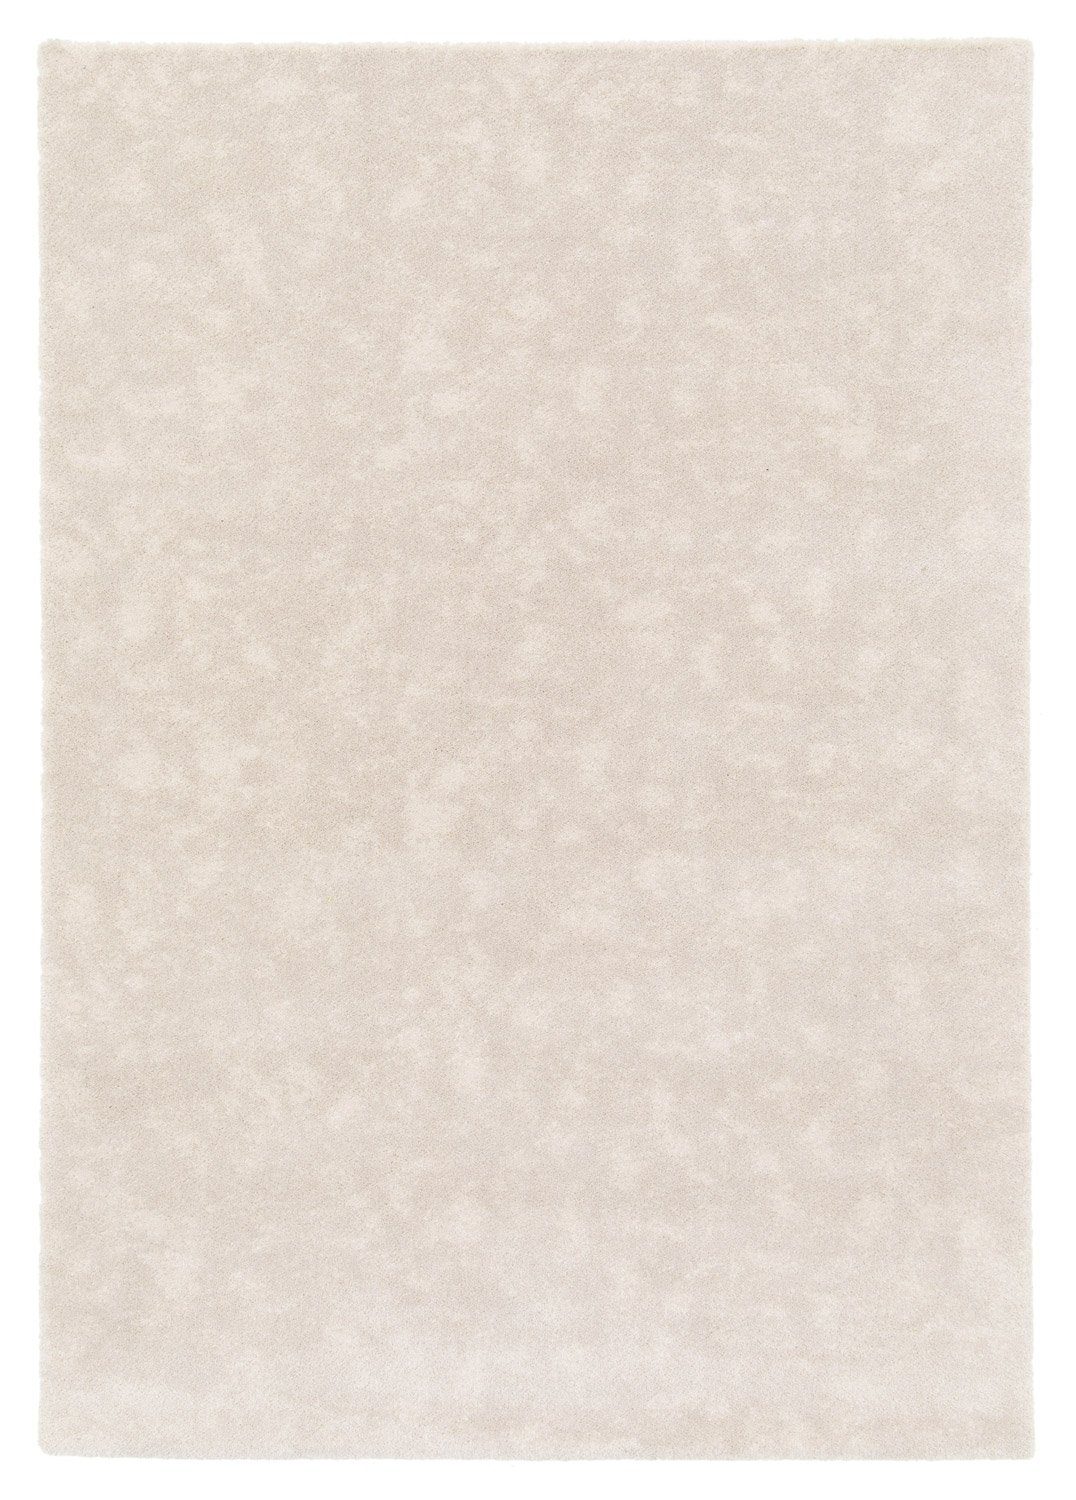 Teppich MOON, Polypropylen, Hellbeige, 80 x 150 cm, Balta Rugs, rechteckig, Höhe: 17 mm